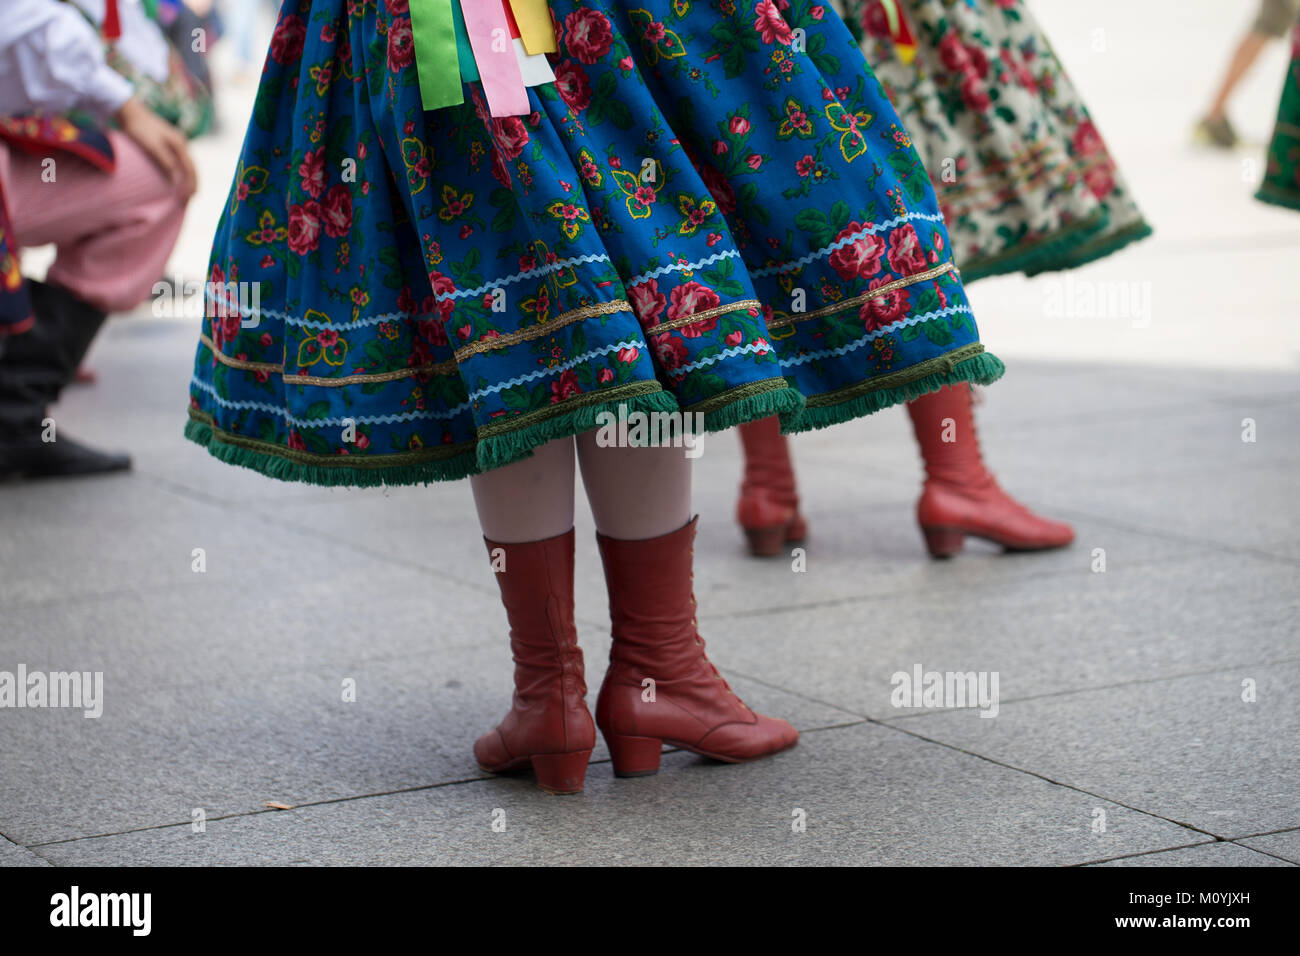 Groupe de danse folklorique polonais avec costume traditionnel Banque D'Images